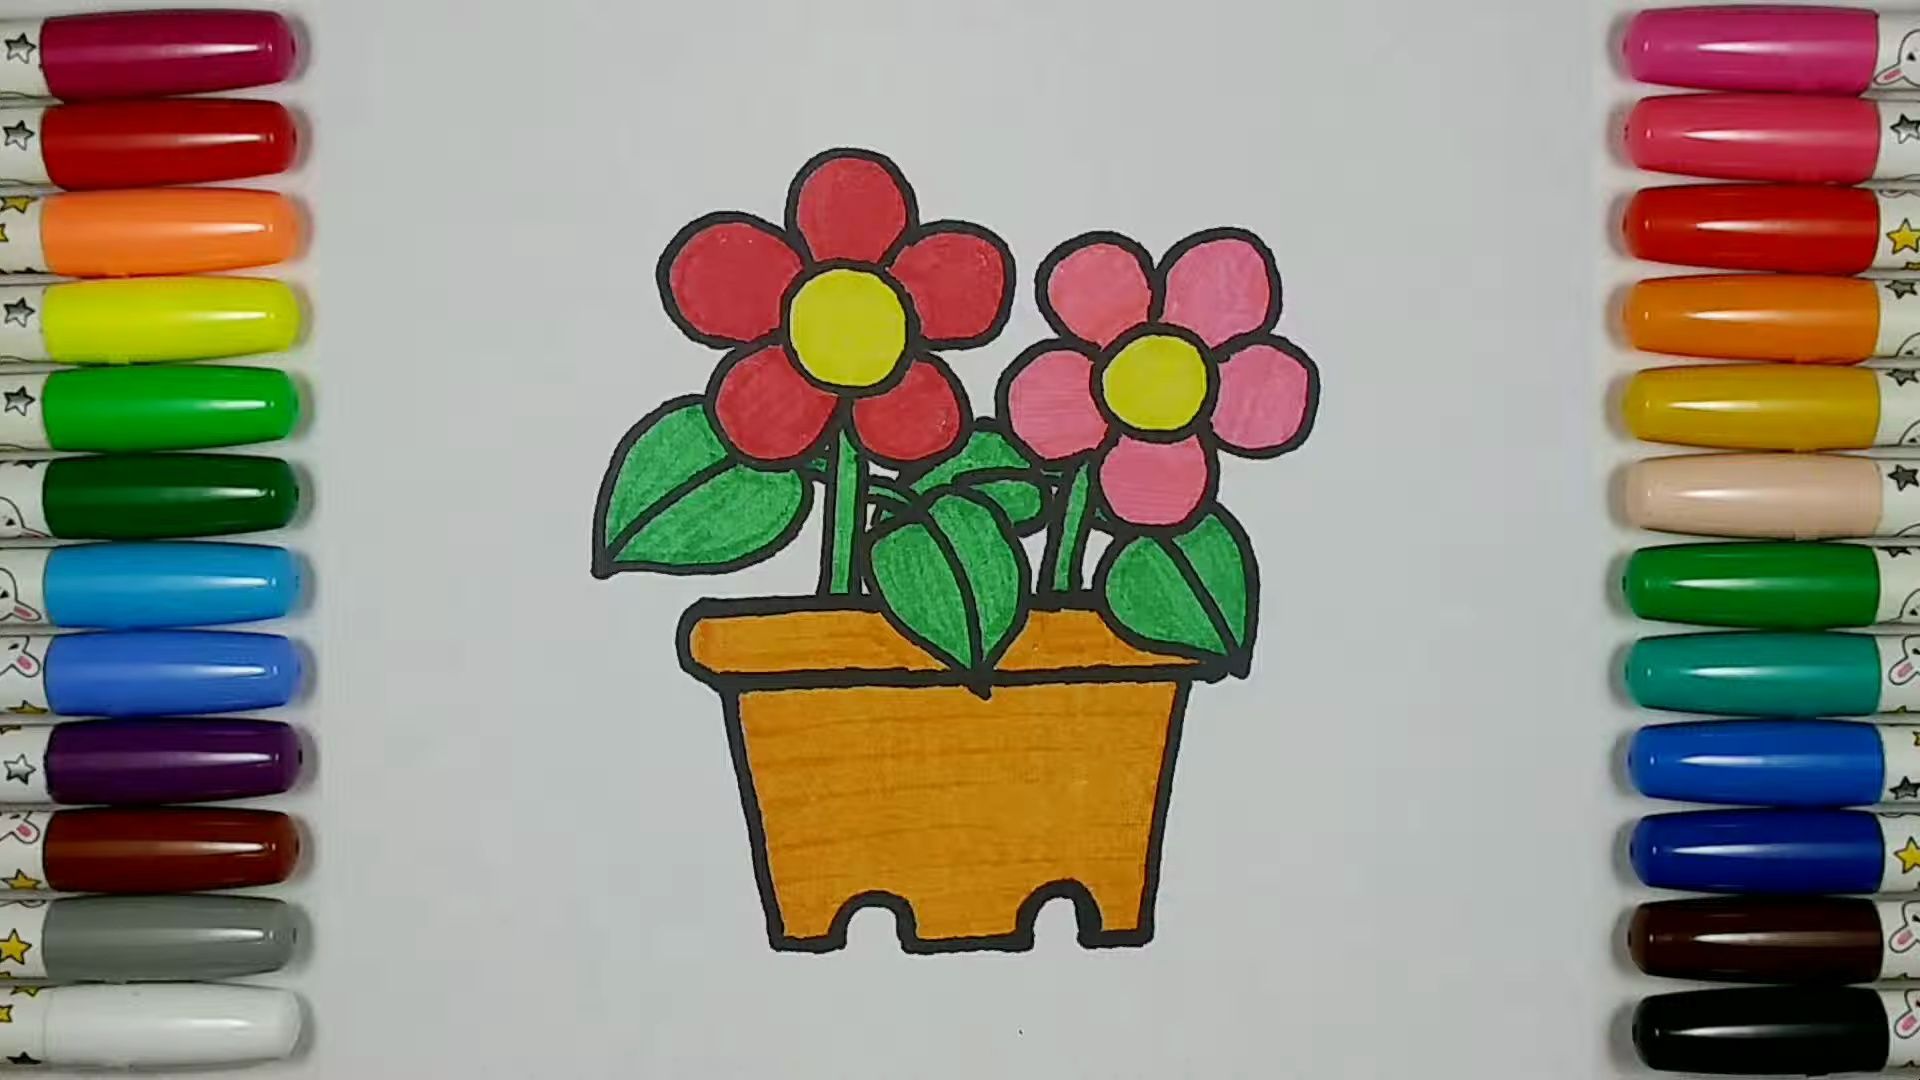 【儿童简笔画教程】画一个可爱的盆栽花卉:美丽的小园丁!